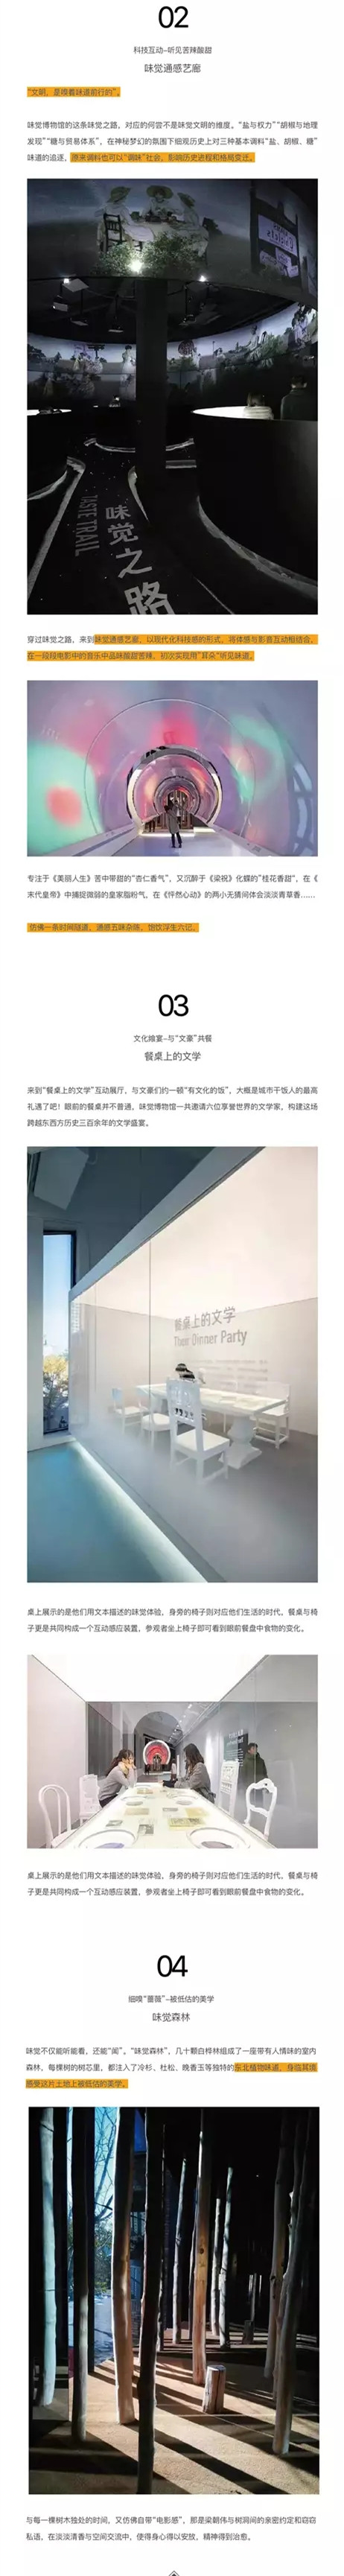 2020红梅文创园·味觉博物馆（3号楼）-沈阳站